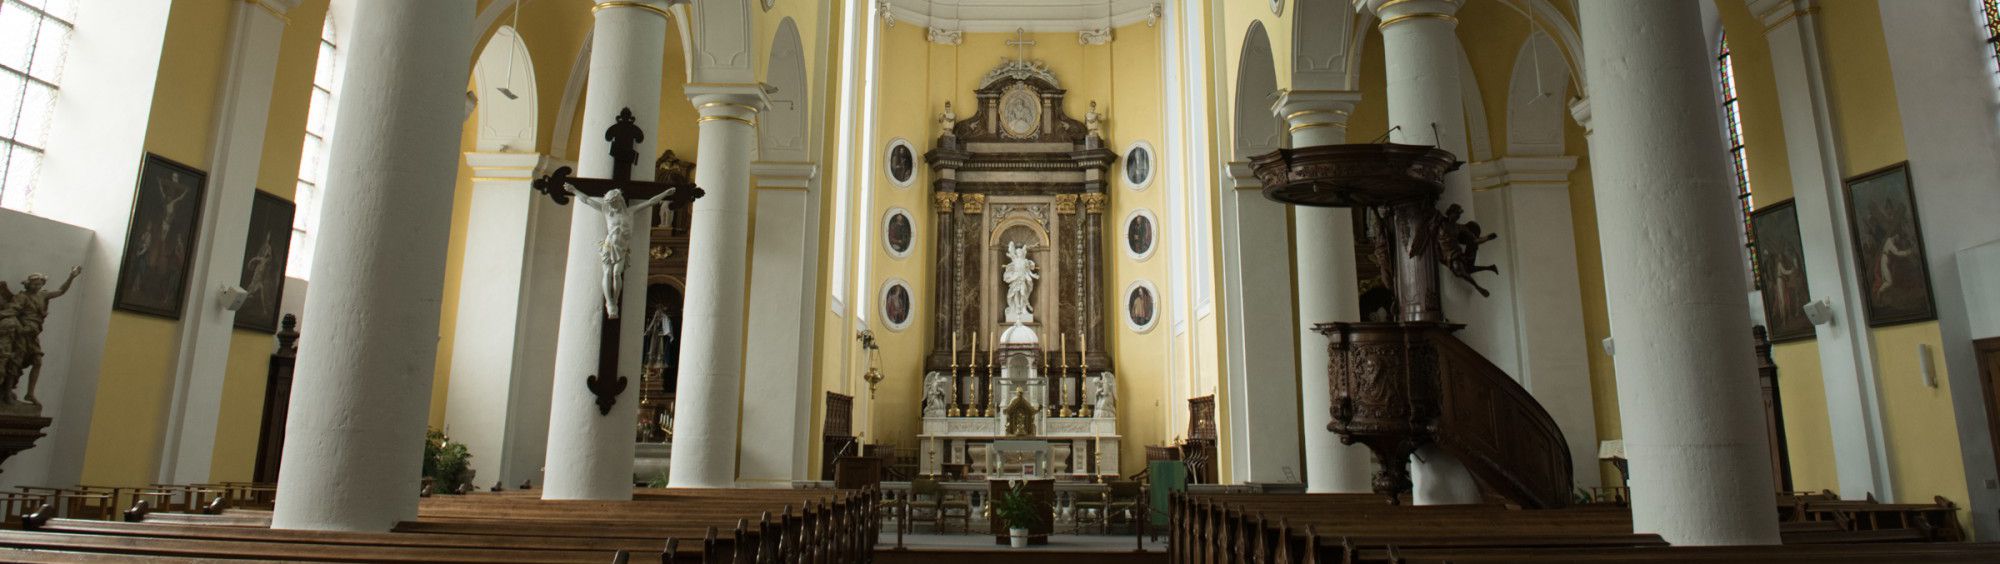 Eglise primaire Saint-Sébastien